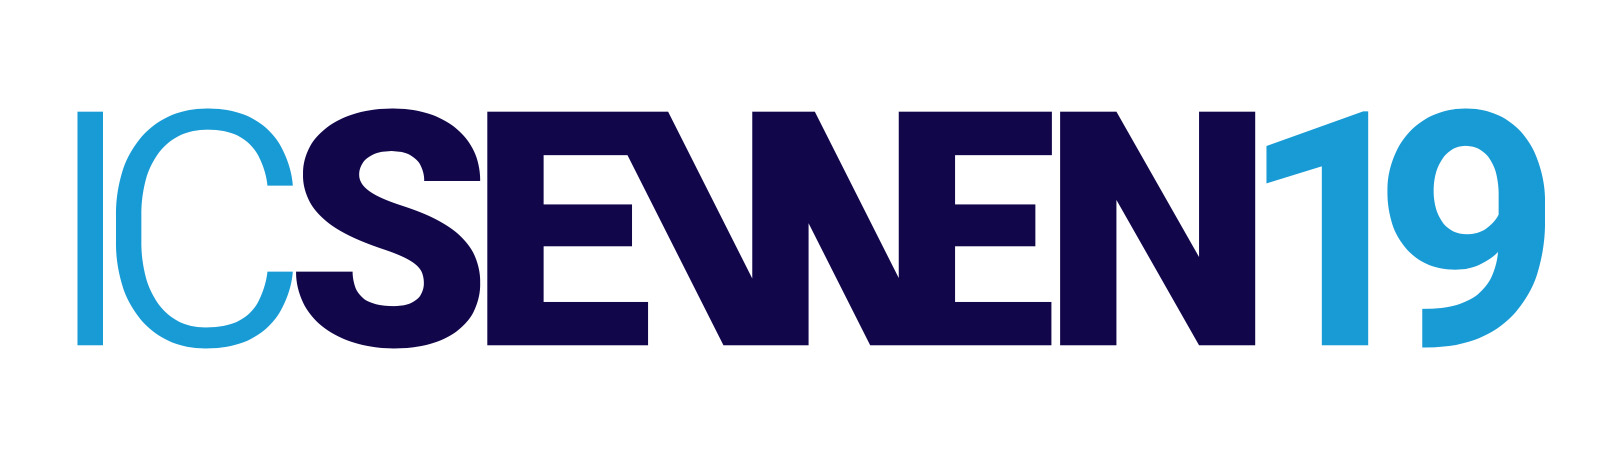 IC SEWEN19 logo